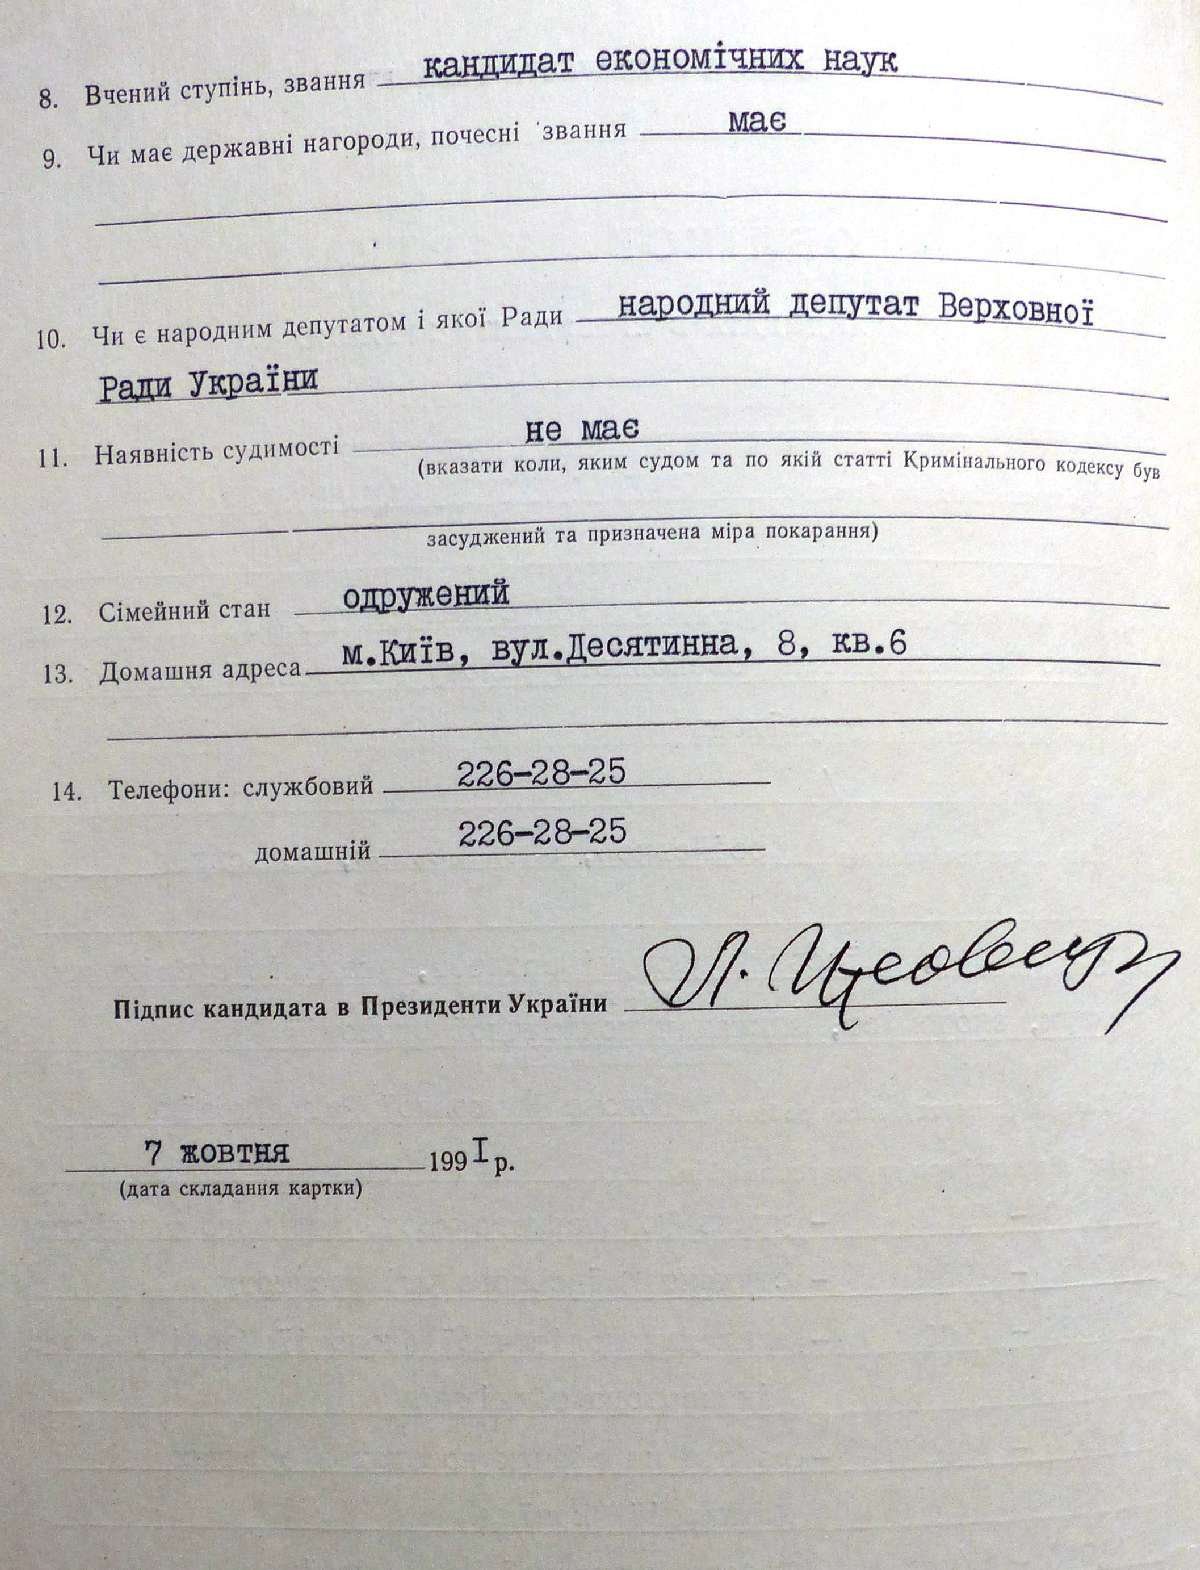 Облікова картка кандидата в Президенти України Кравчука Леоніда Макаровича. 7 жовтня 1991 р.